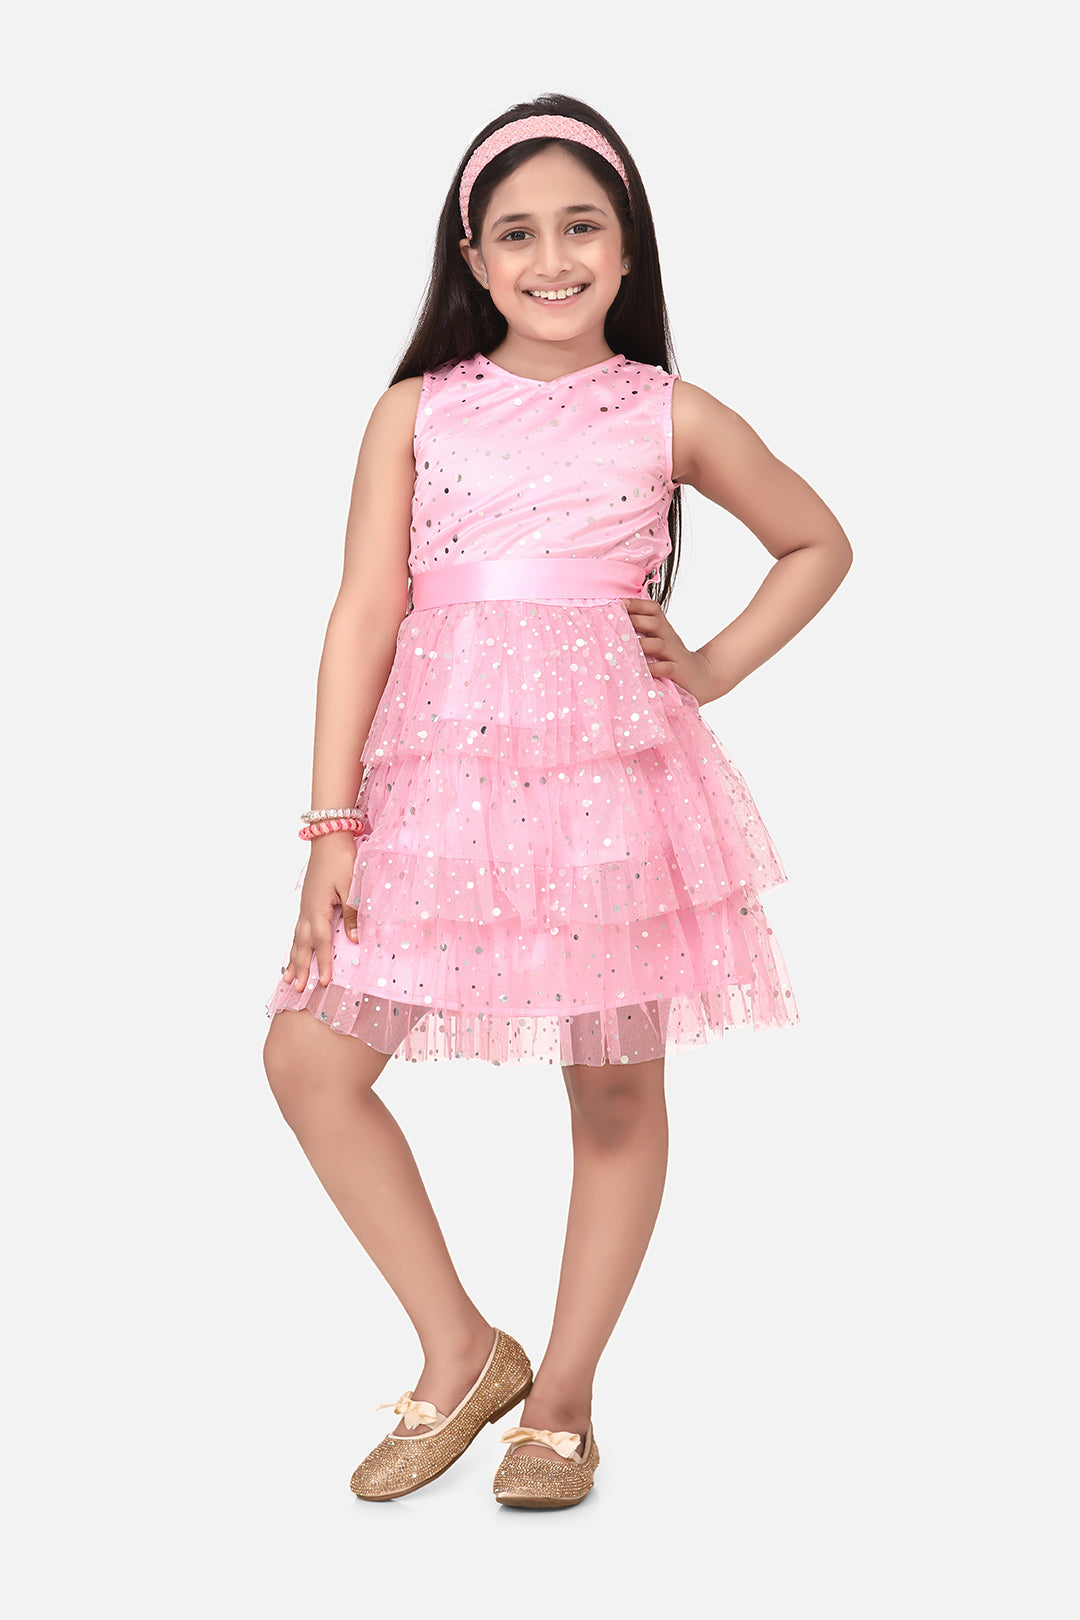 Gilr's Multitier Embellished Beige Net Party Dress - StyleStone Kid